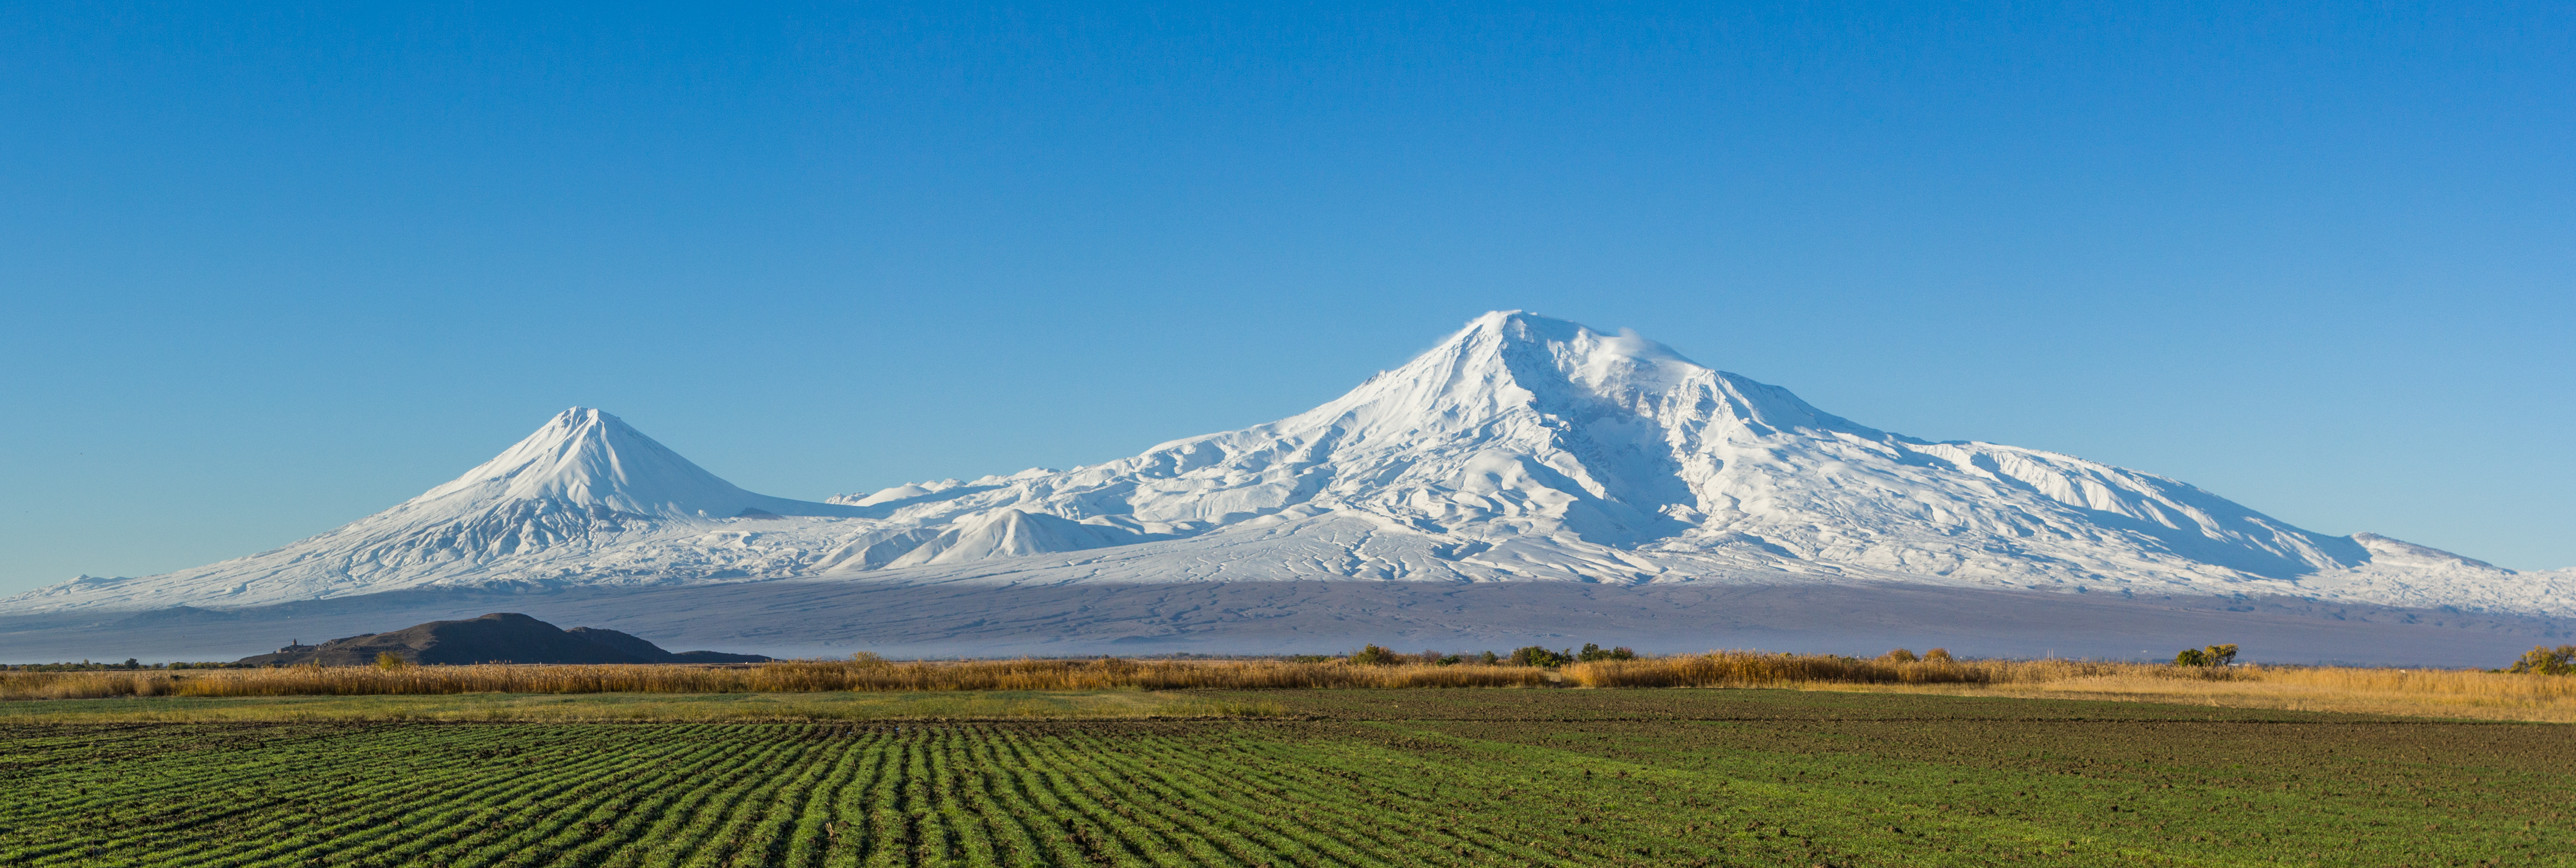 Mount_Ararat_and_the_Araratian_plain.jpg